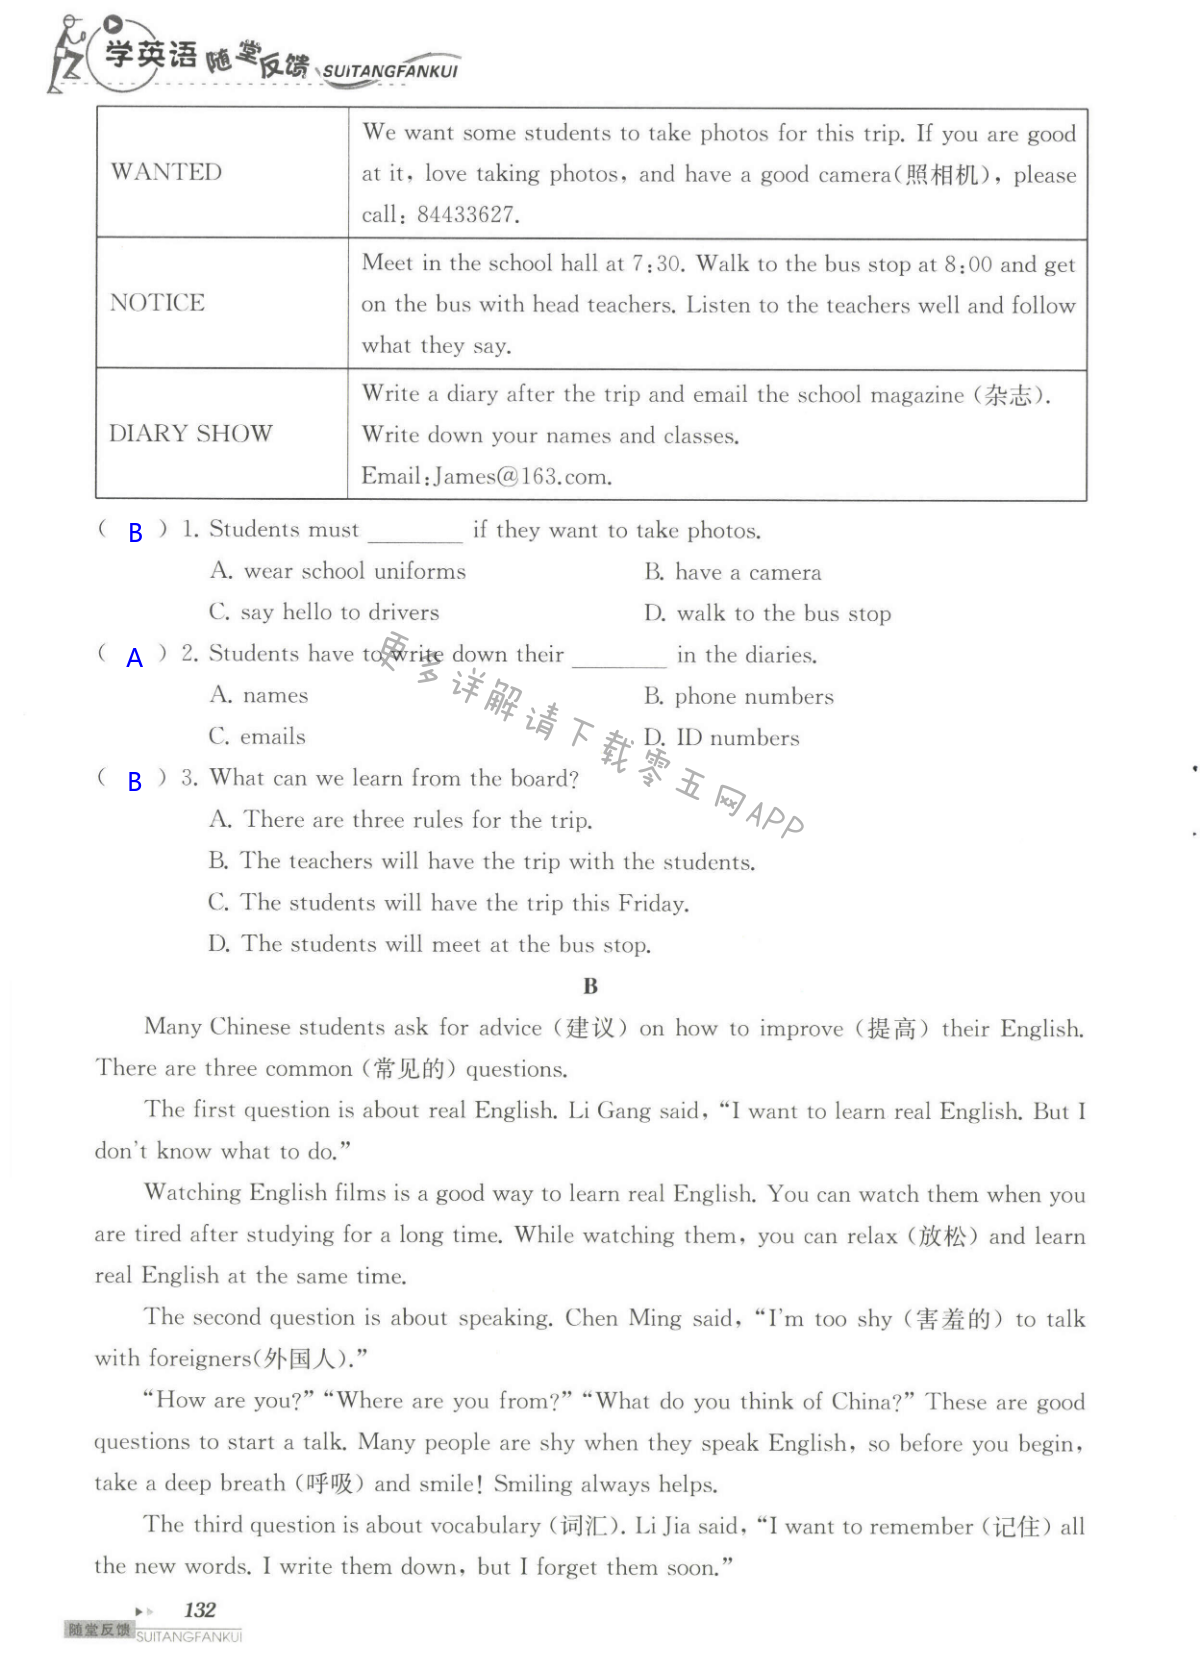 单元综合测试卷 Test for Unit 3 of 7B - 第132页